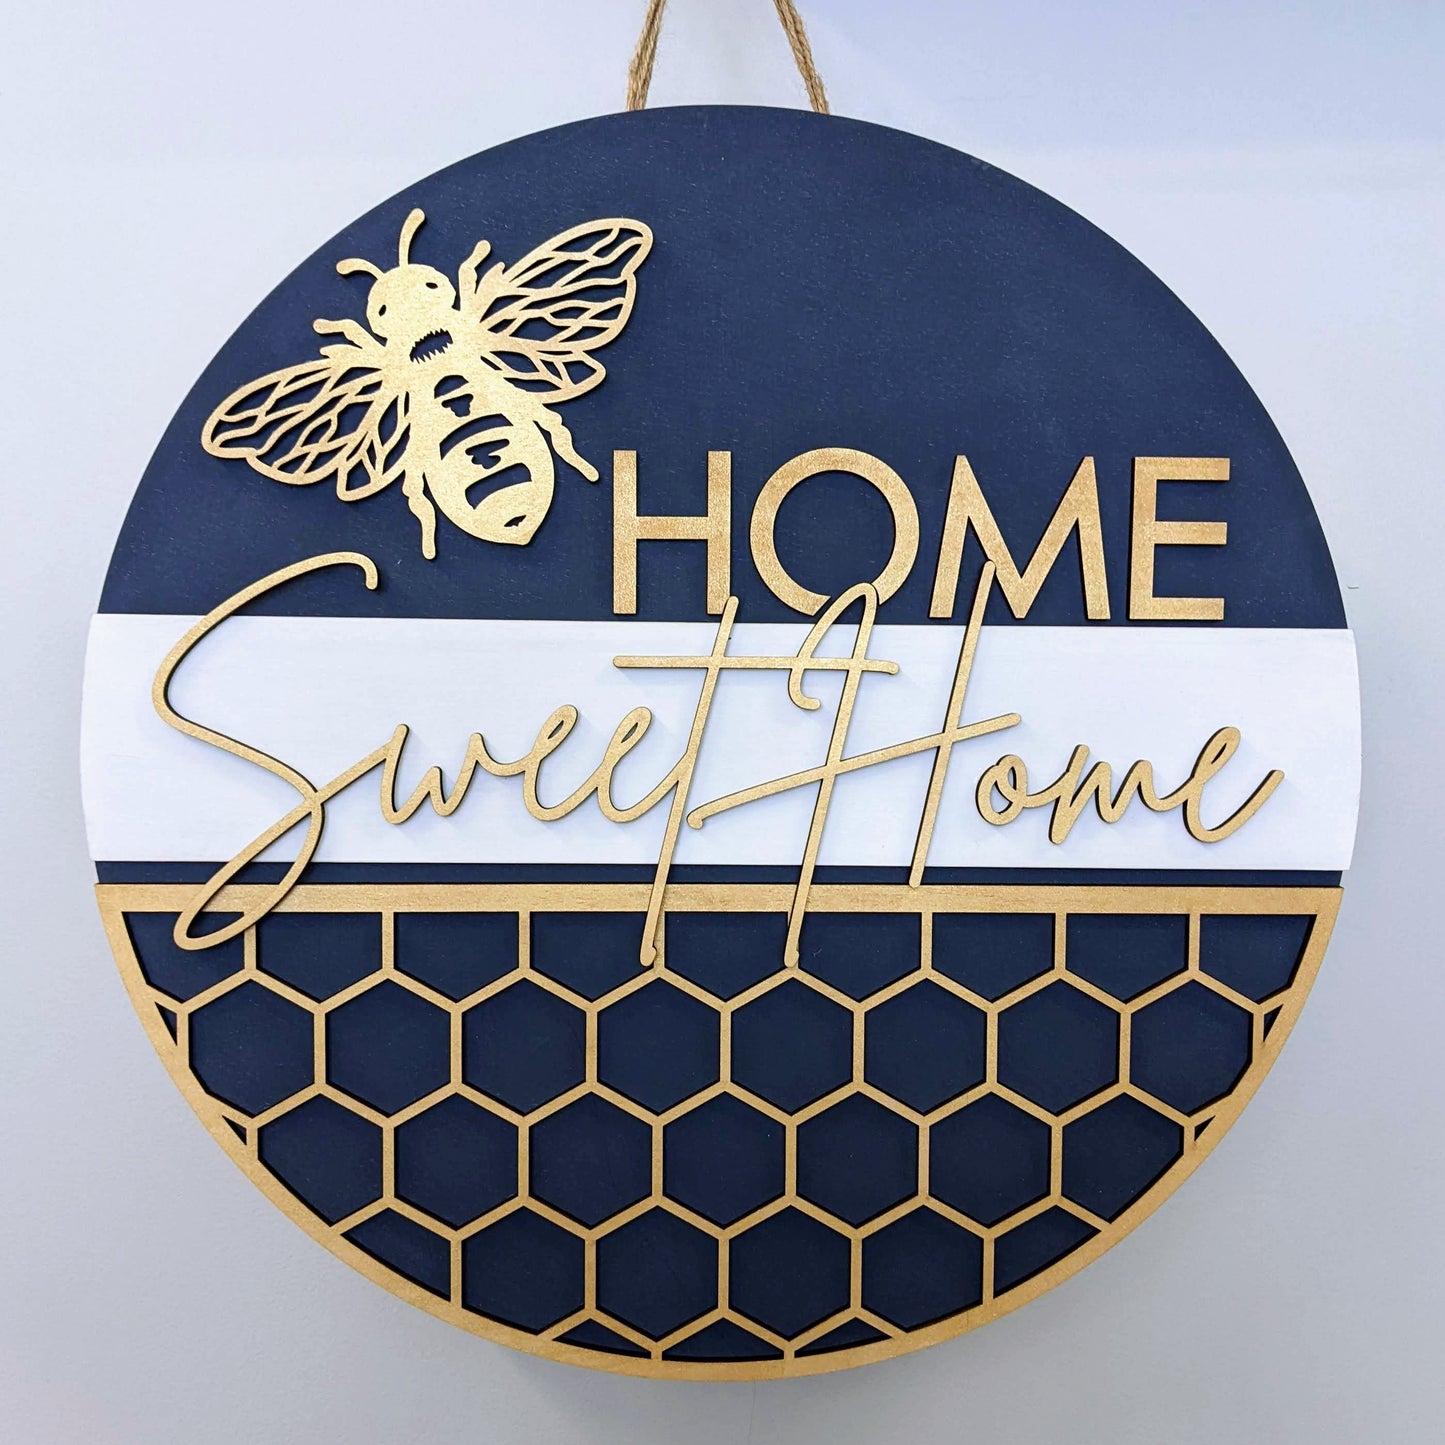 Home sweet home bee design doorhanger